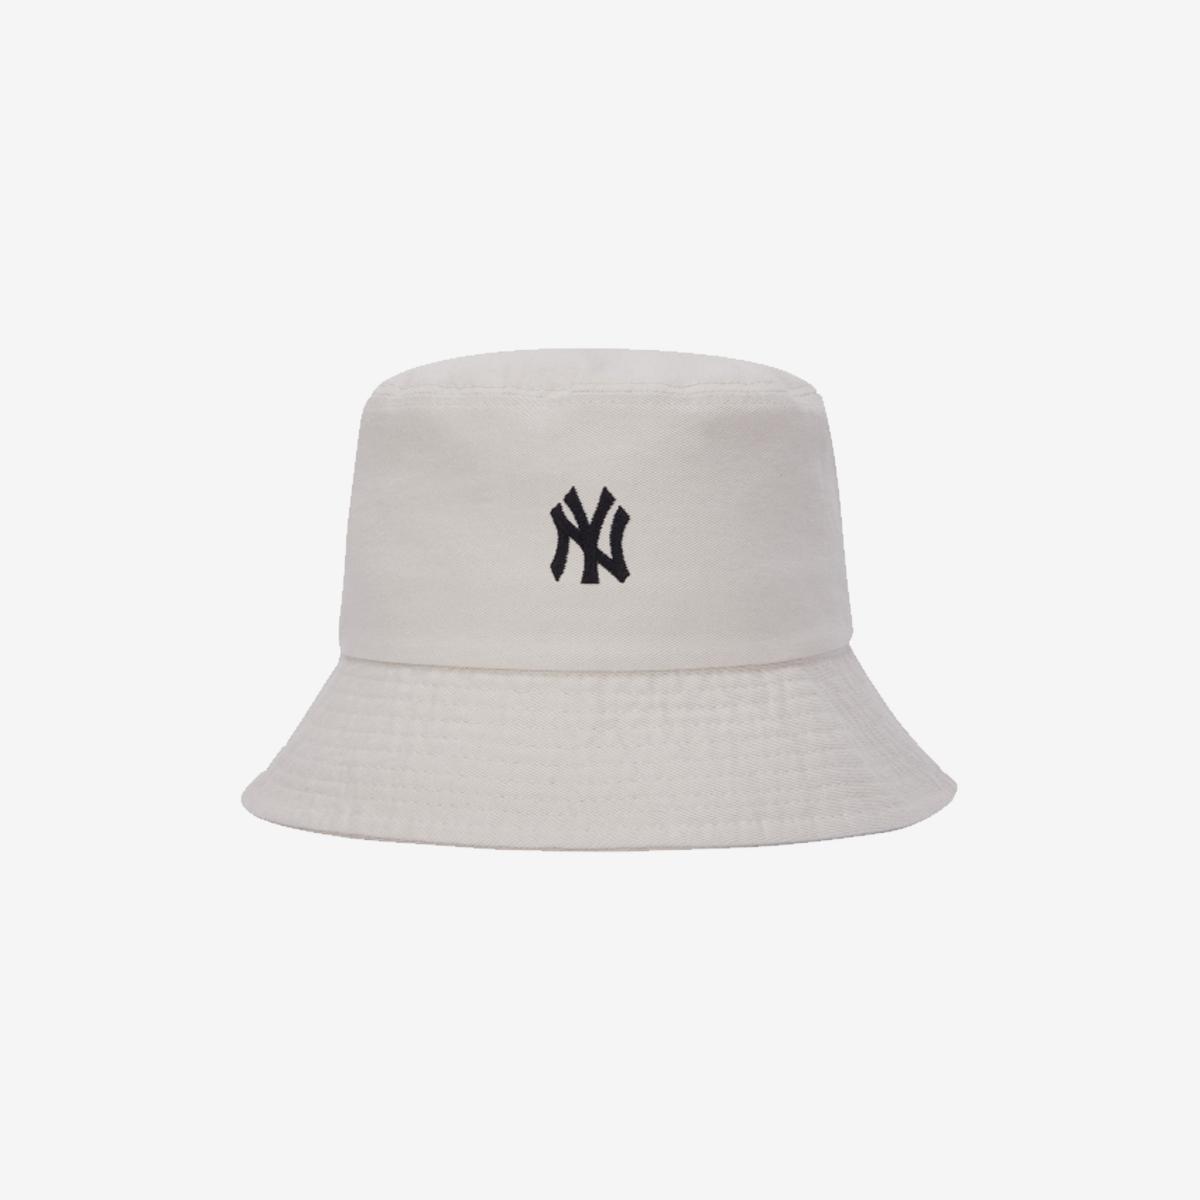 Rookie紐約洋基隊漁夫帽